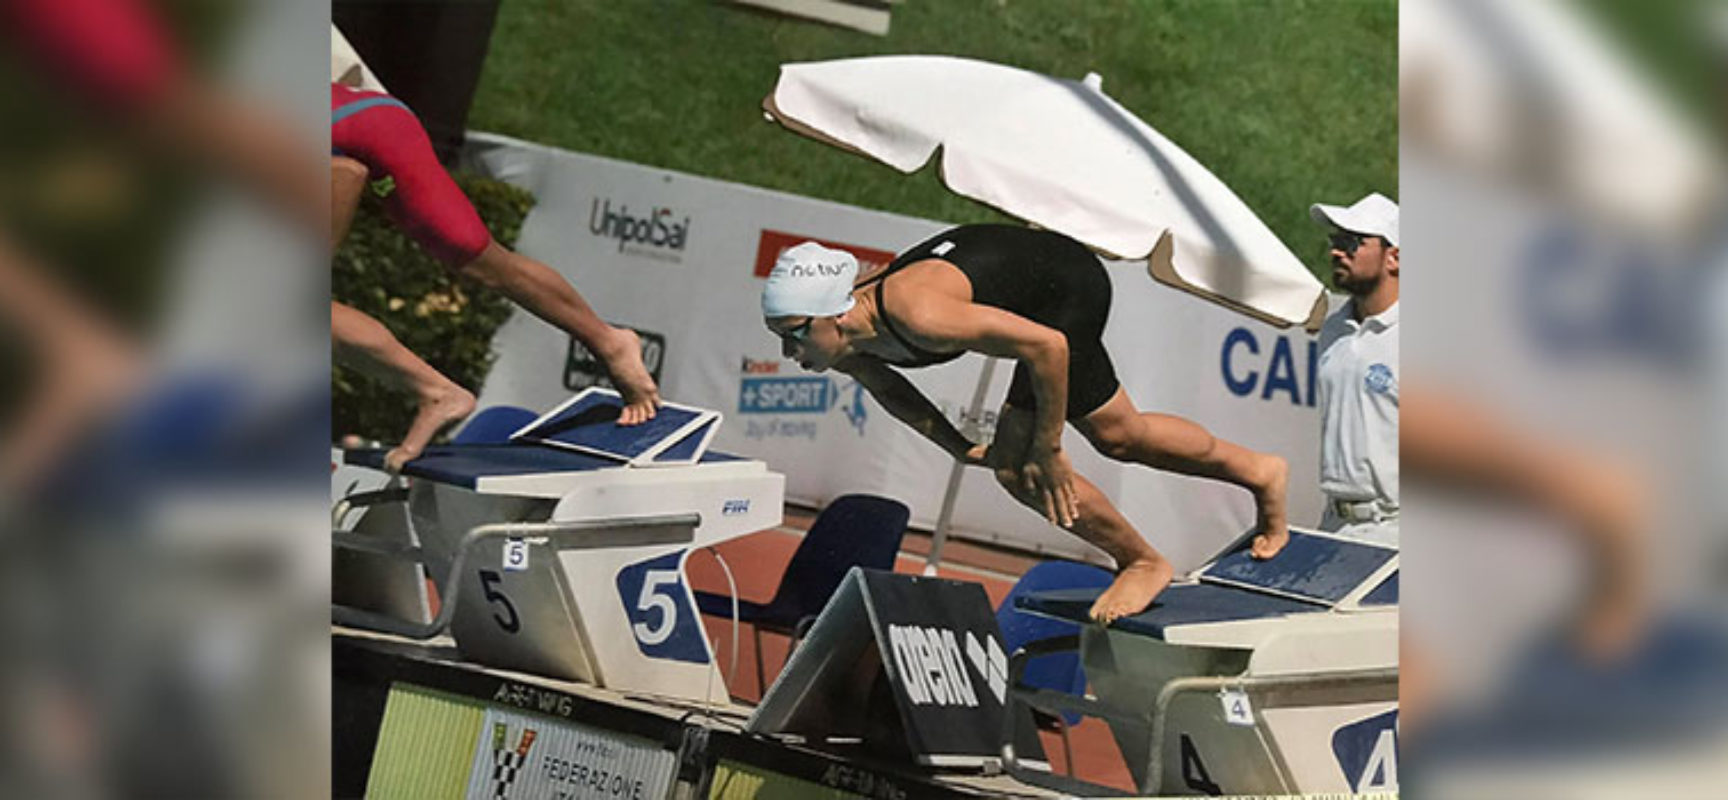 Campionati assoluti di nuoto: ottimo piazzamento per la biscegliese Napoletano nella finale dei 50 stile libero